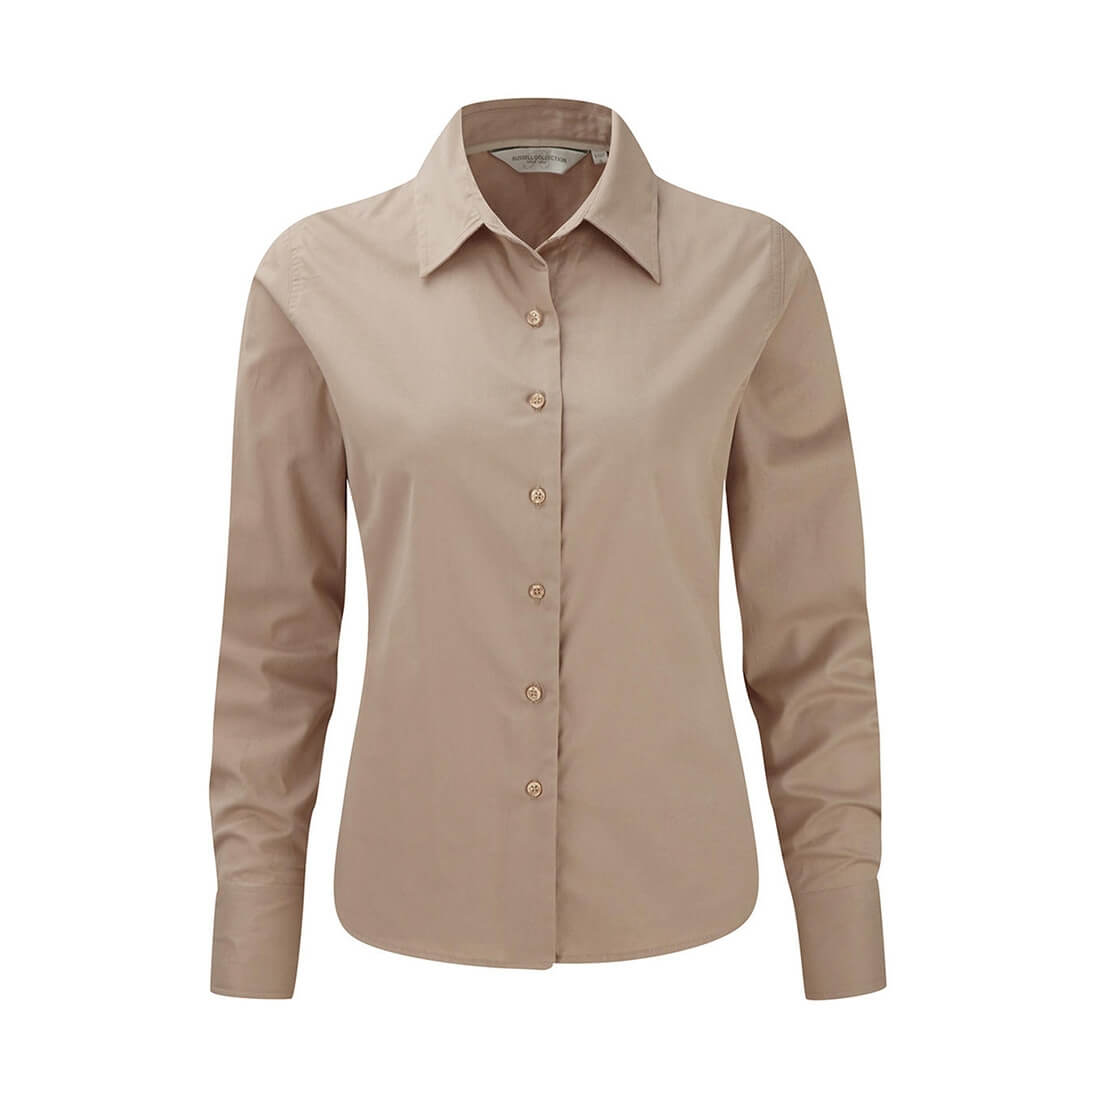 Ladies’ Long Sleeve Classic Twill Shirt - Les vêtements de protection